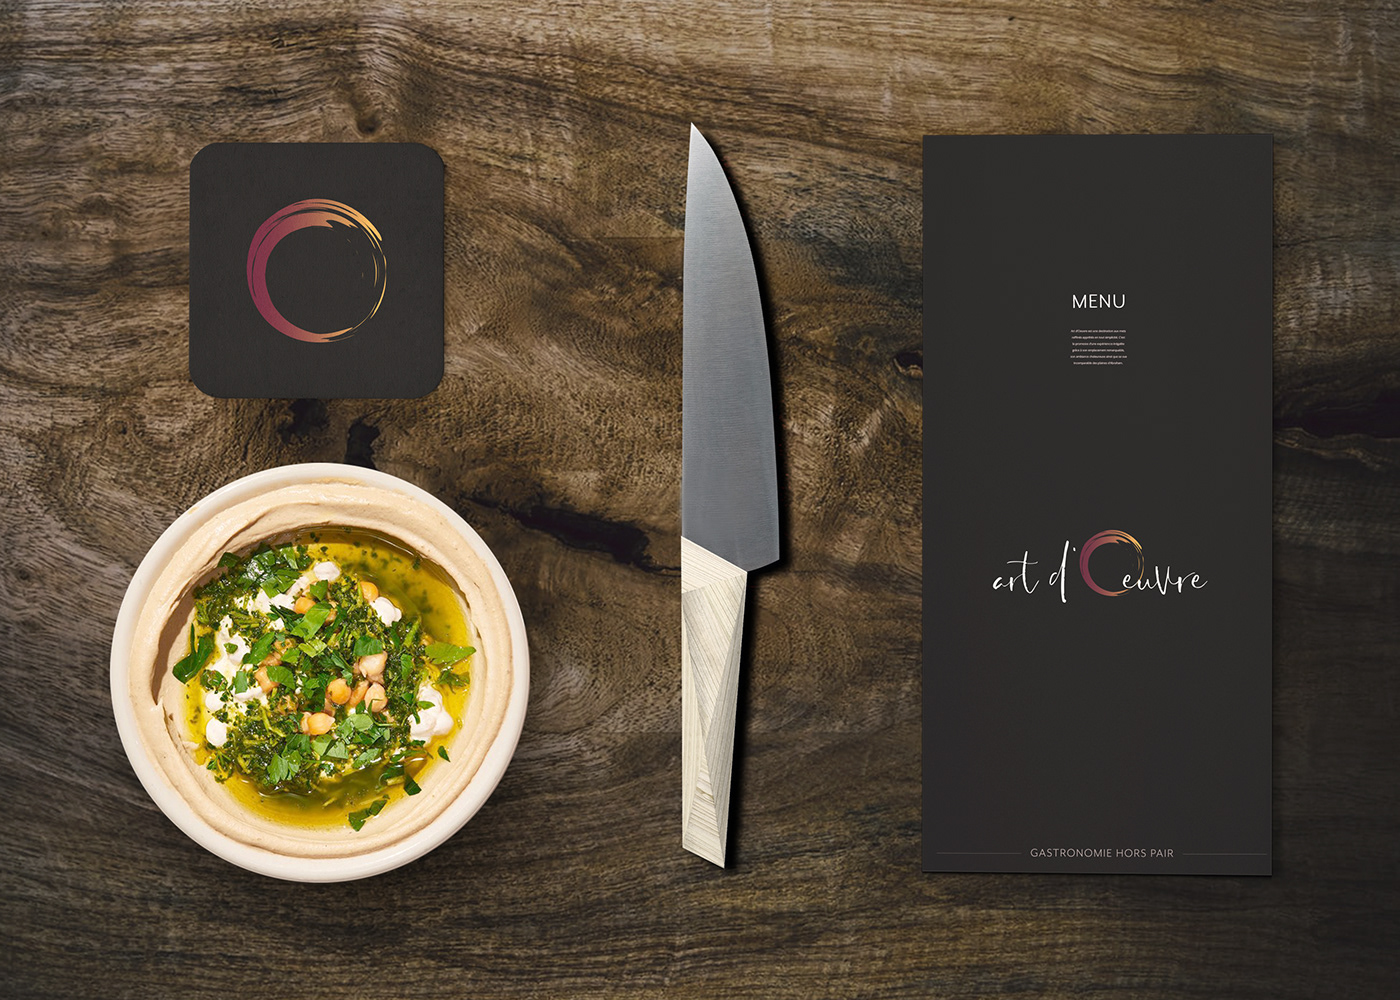 art Art culinare logo MNBAQ musée branding  restaurant